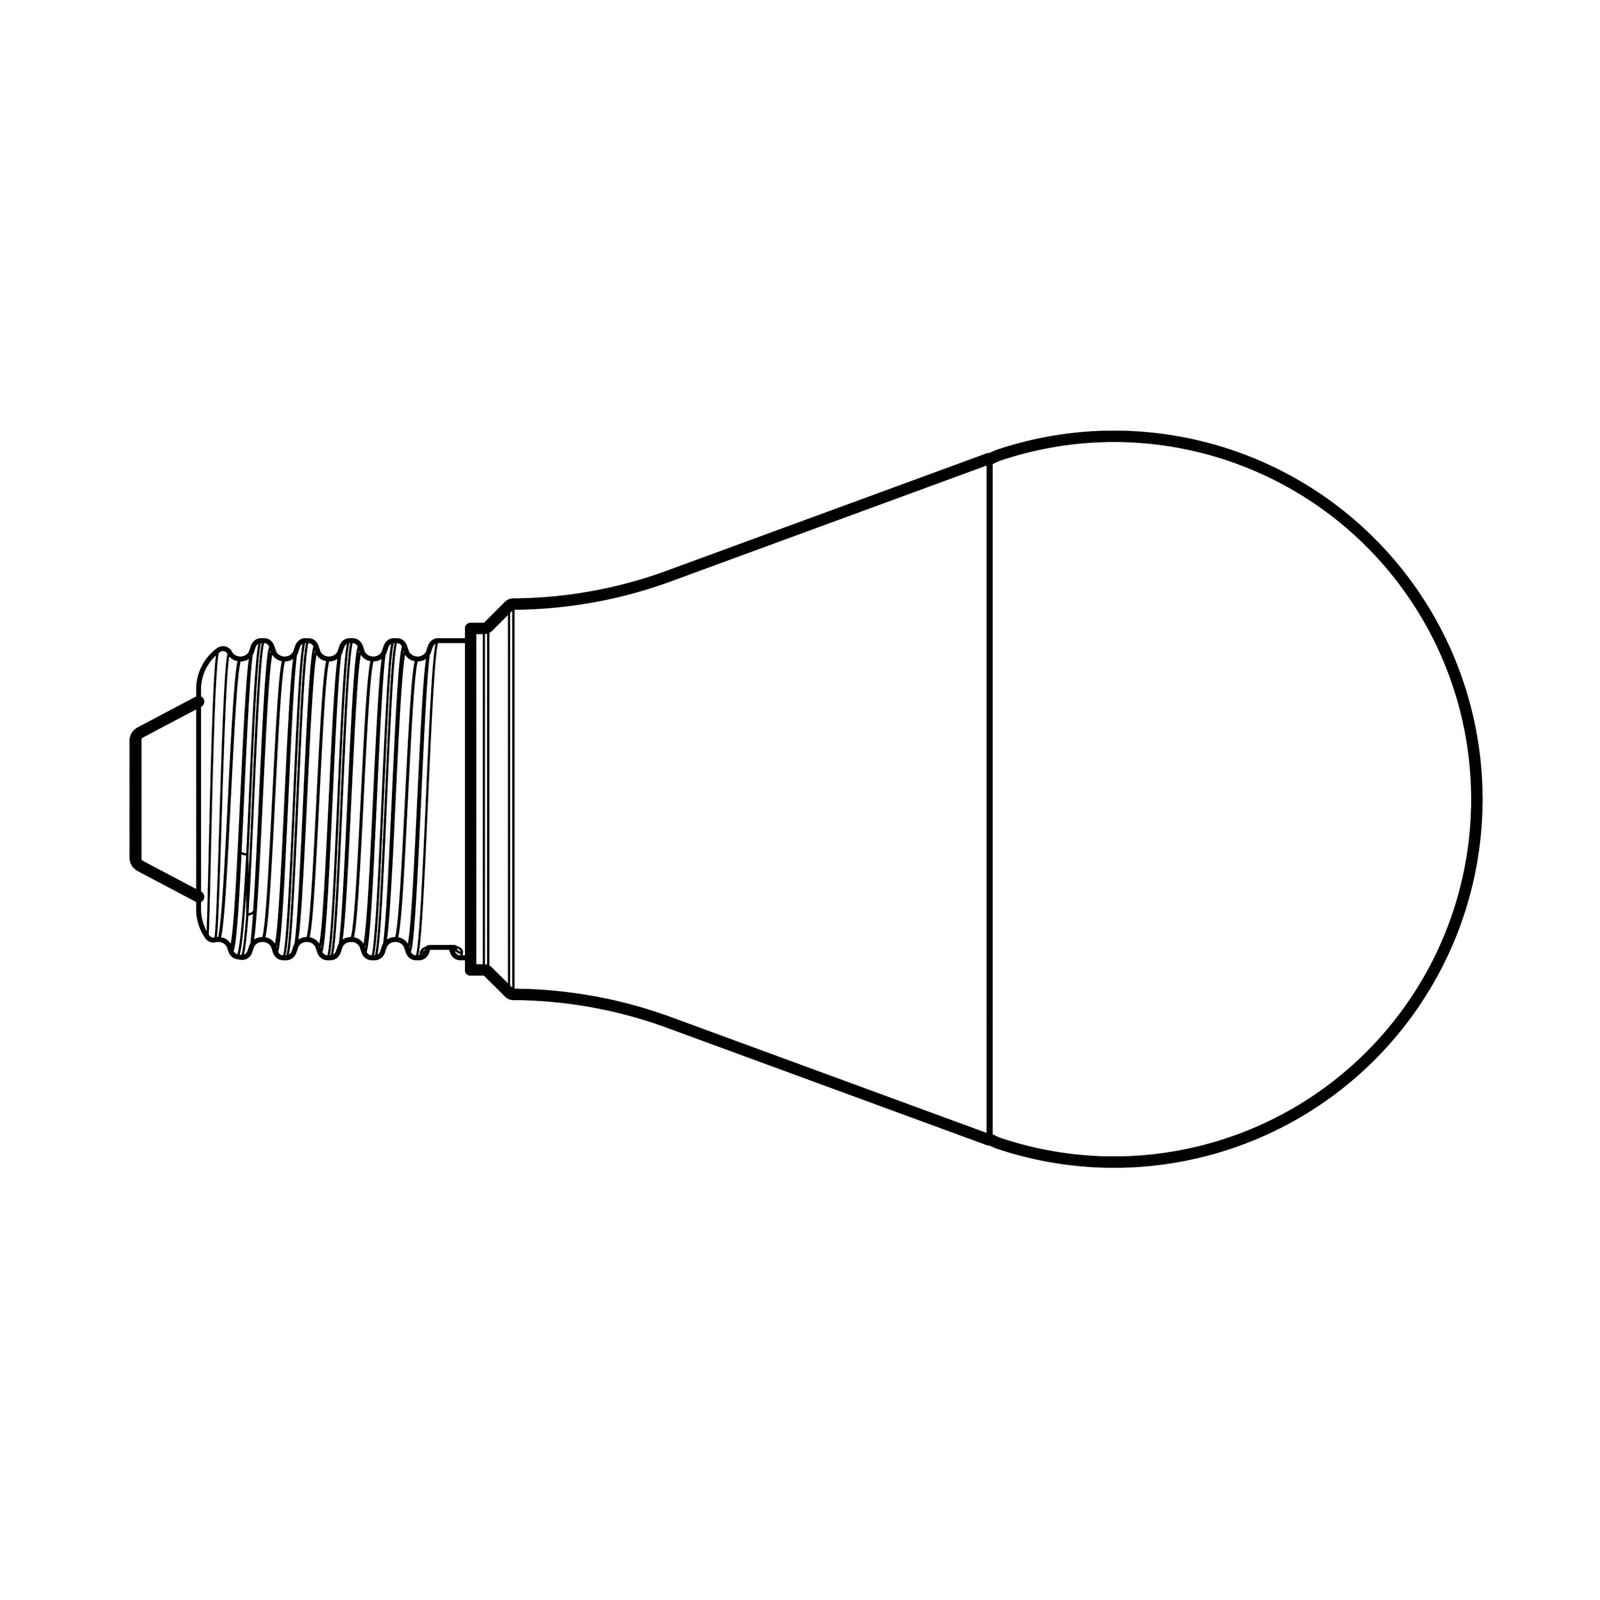 LED žárovka, matná, E27, 6,5 W, 3000 K, 900 lm